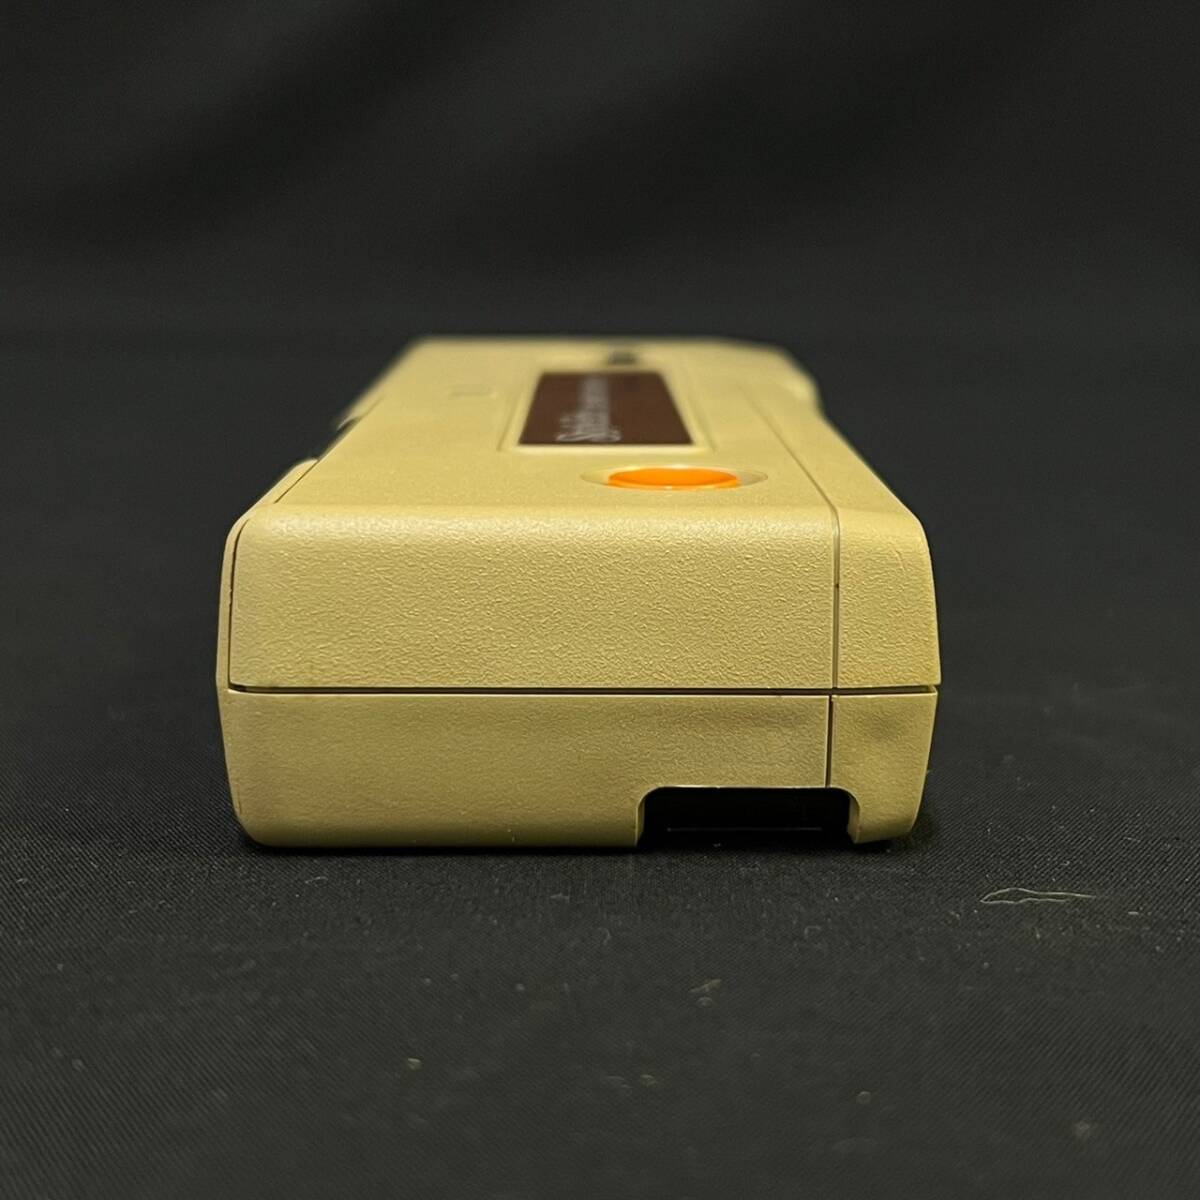 BBg294C 60 当時物 Kodak Style Lite Pocket コダック スタイルライト ポケットカメラ フィルムカメラ 説明書 Kodacolor フィルム付 まとめ_画像7